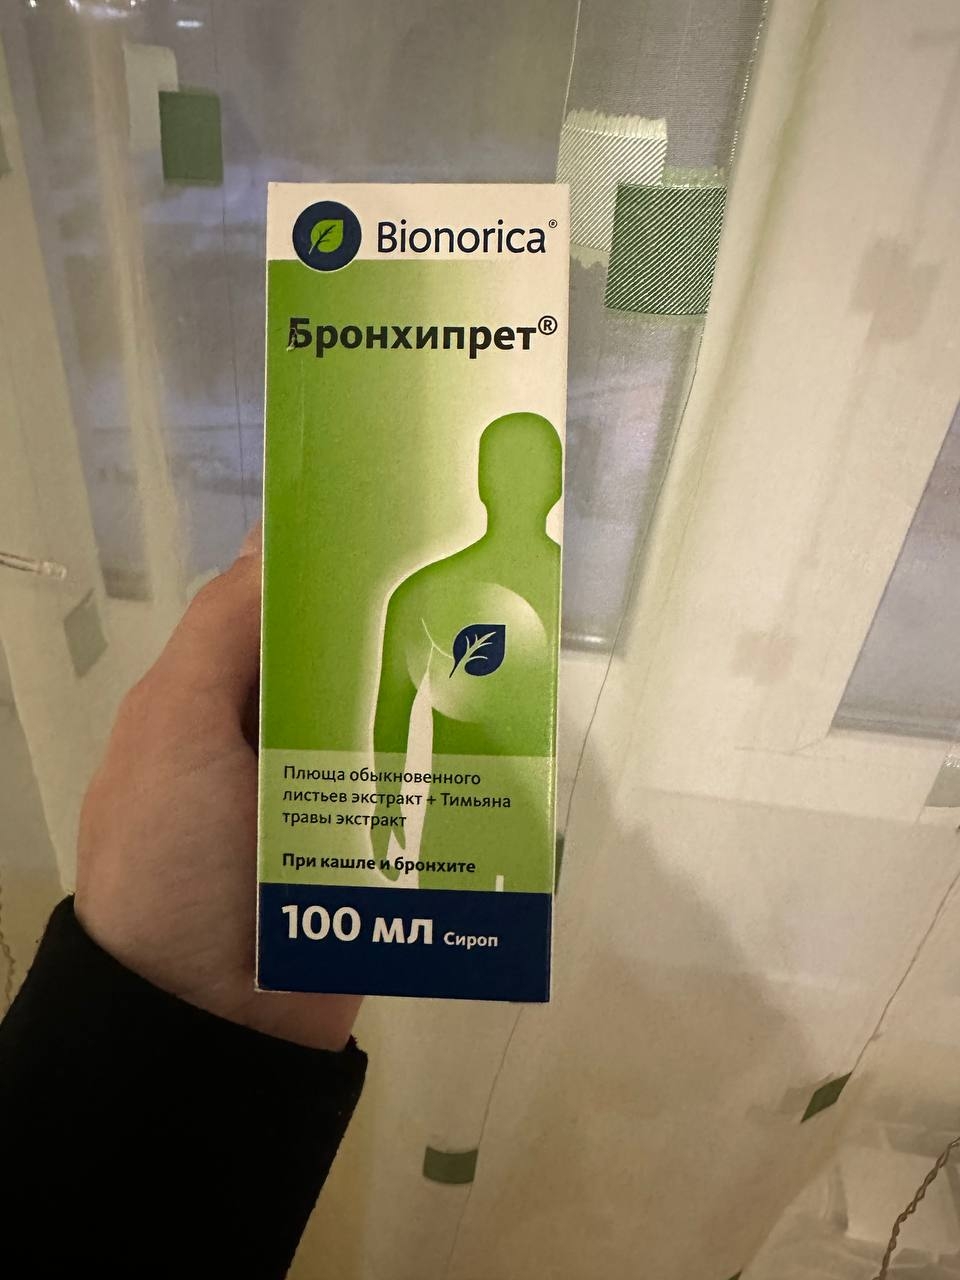 Bronchipret (Бронхипрет) - Эффективный препарат от кашля